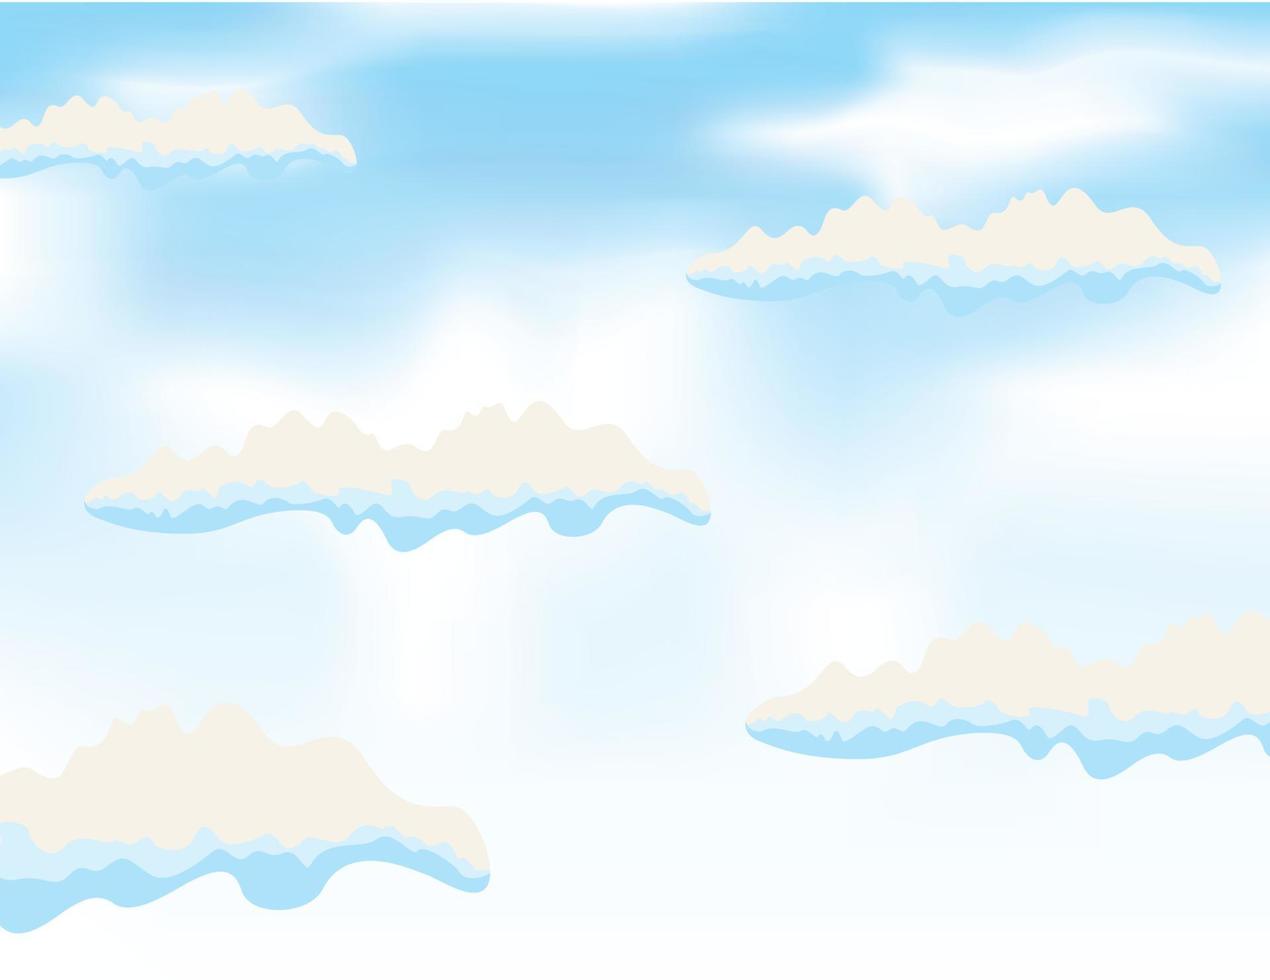 das Blau Himmel und Wolken auf Es. ein Vektor Illustration